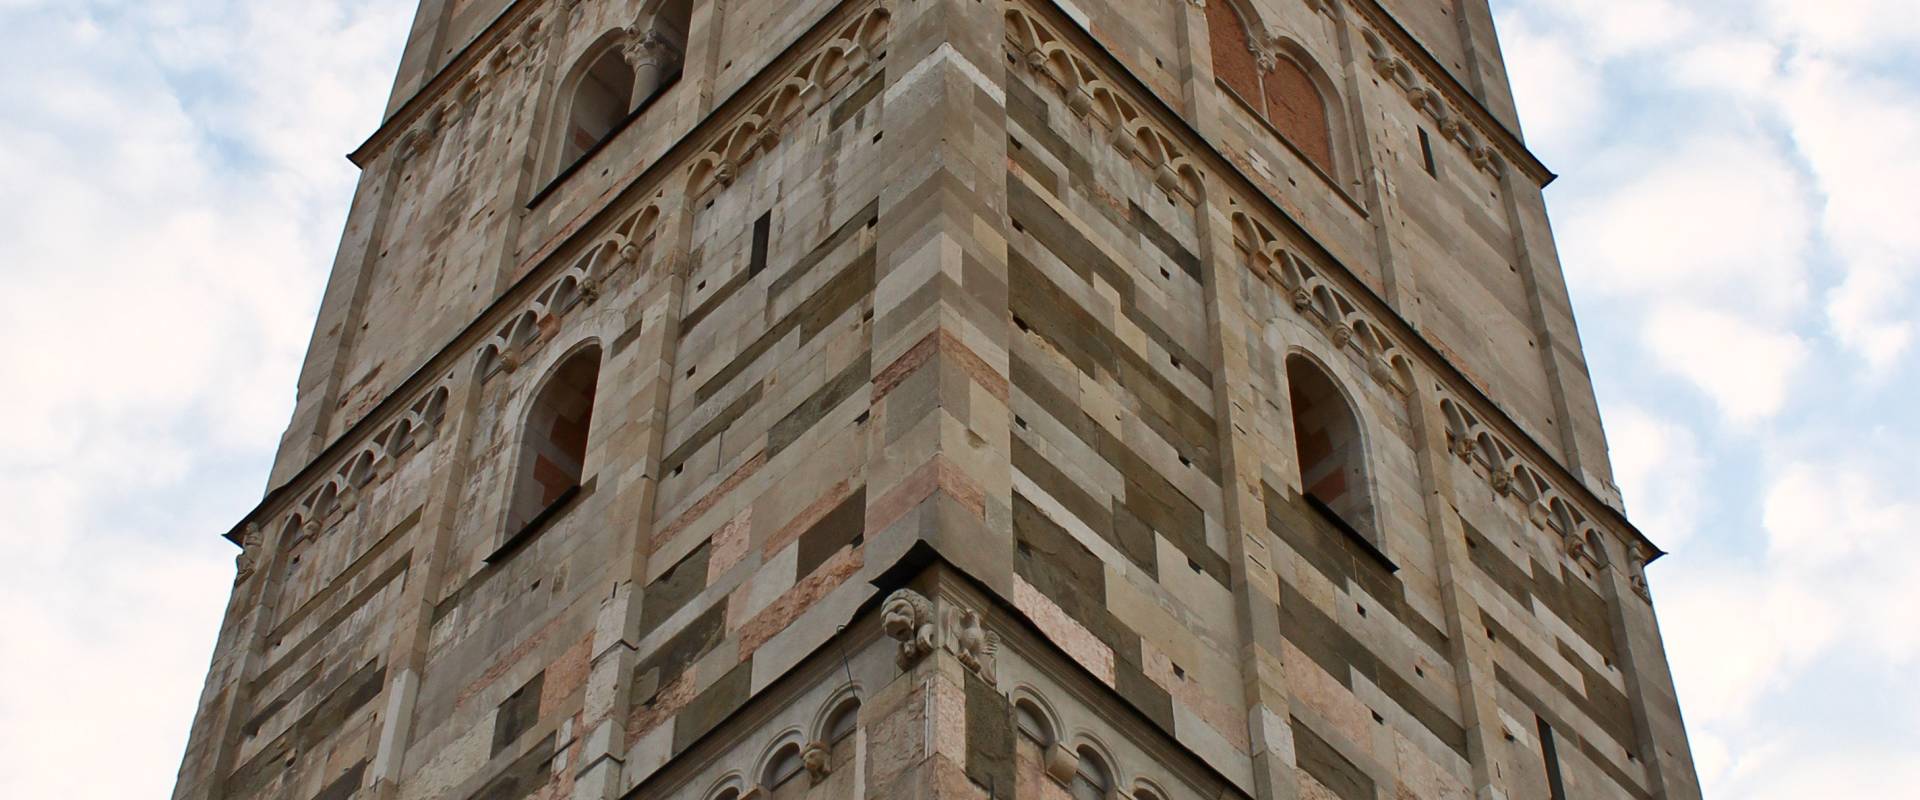 La torre Ghirlandina di Modena foto di Makuto72